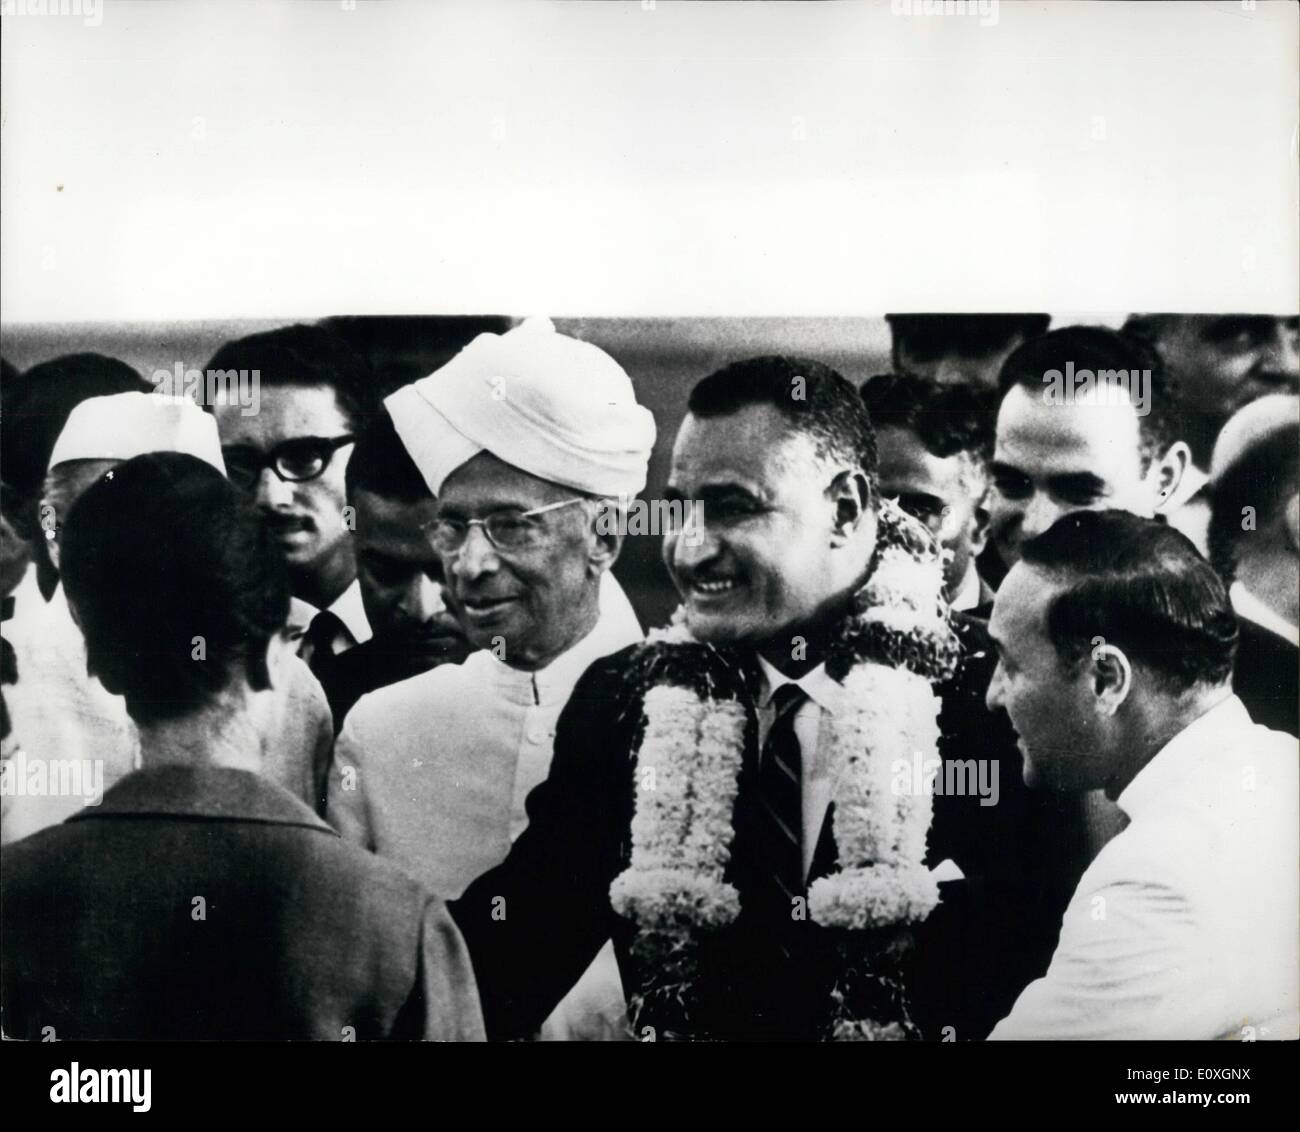 10. Oktober 1966 - Präsident Nasser kommt in Neu-Delhi, Indien - Yugosliavia besuchen-U.A.R. Summit Conference: Präsident Nasser, trägt eine Girlande nach seiner Ankunft am Flughafen von Palam, Neu-Delhi, Indien - Yugeslavia - U.A.R. Sumit Conference teilnehmen. Neben ihm mit Turban ist Präsident Radhakrishnan Indiens. Stockfoto